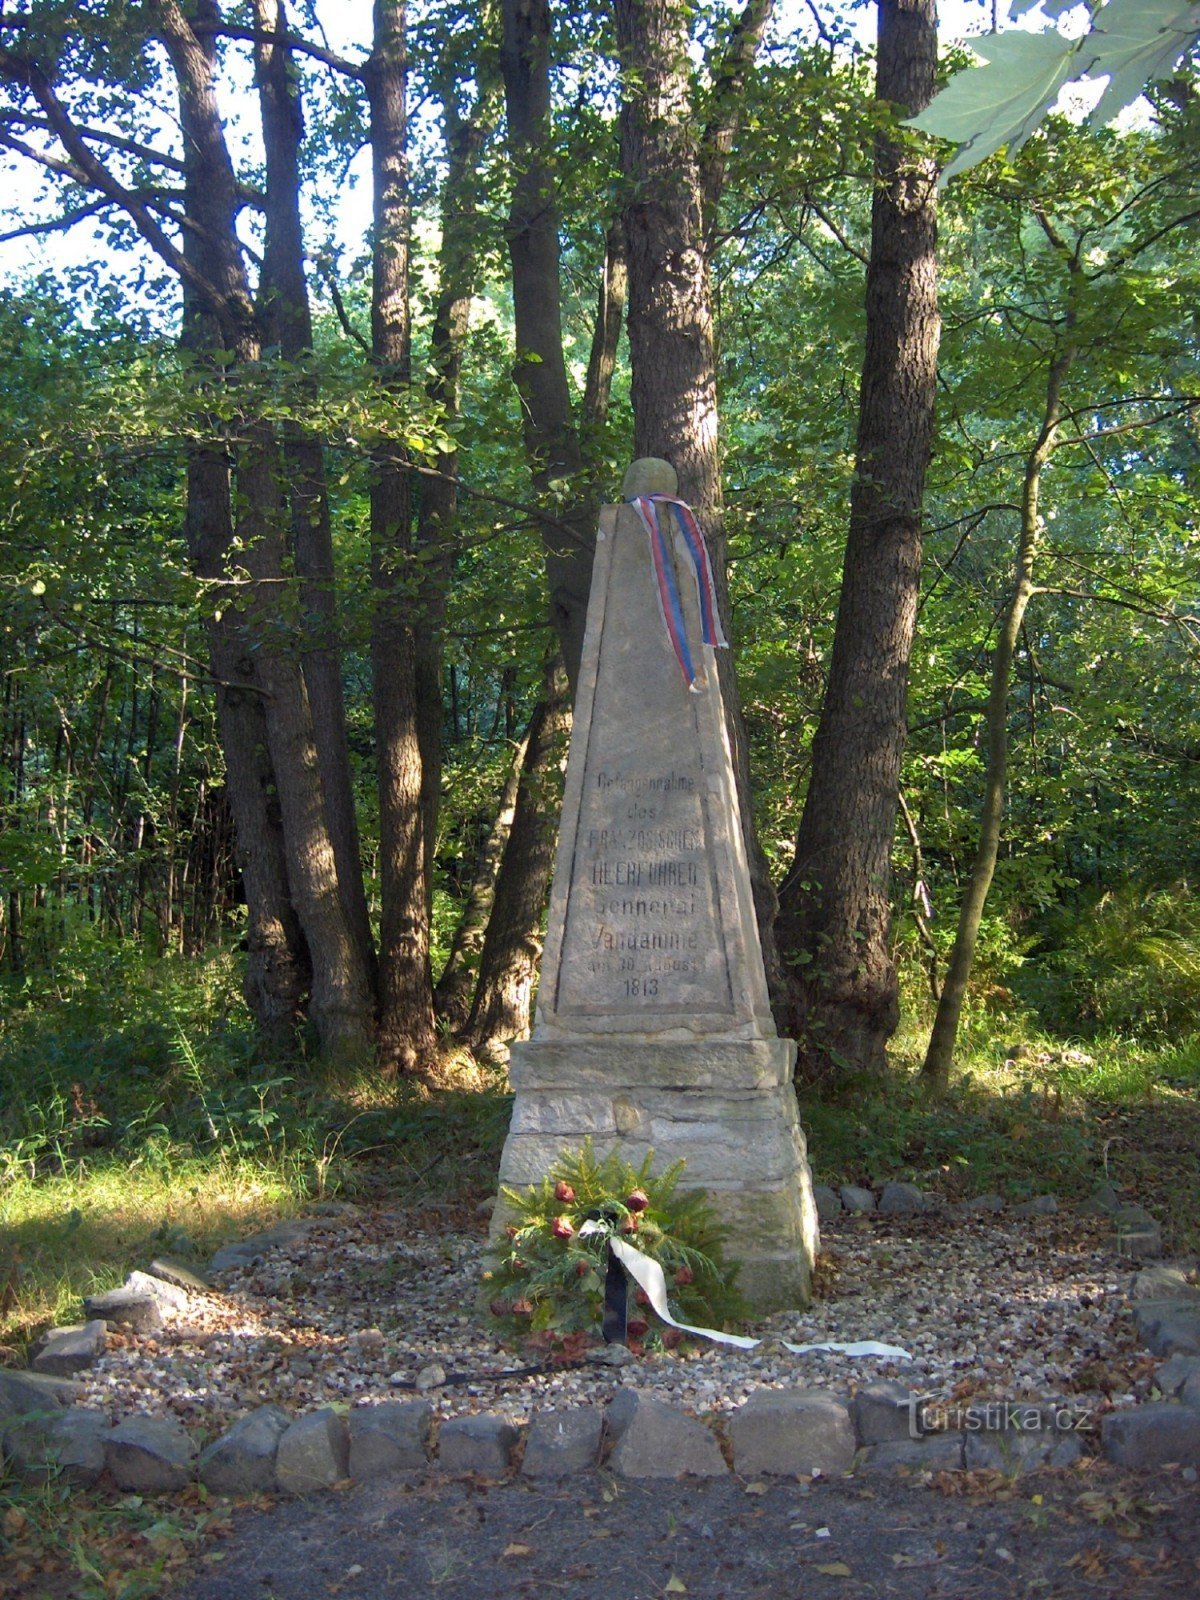 đài tưởng niệm việc bắt giữ tướng Vandamme